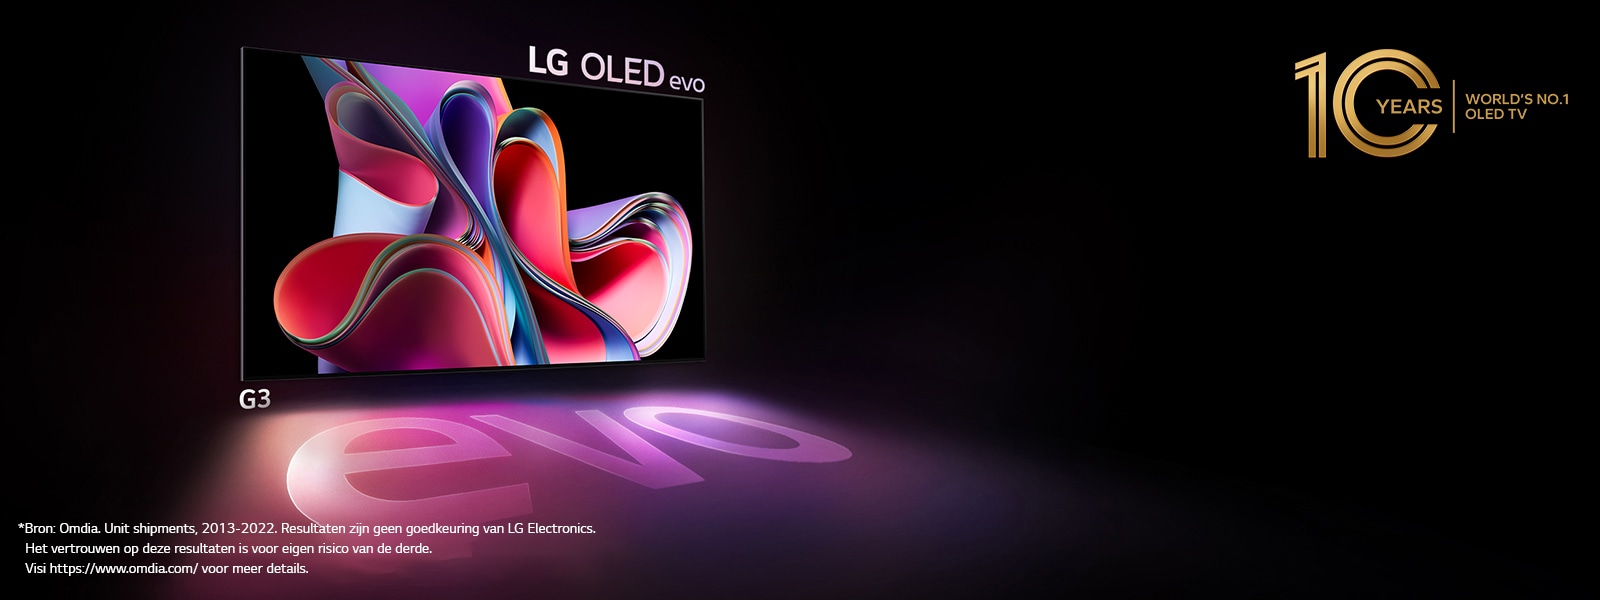 LG OLED G3 evo schijnt helder in een donkere ruimte. En rechtsboven staat een logo om de 10e verjaardag van OLED te vieren.